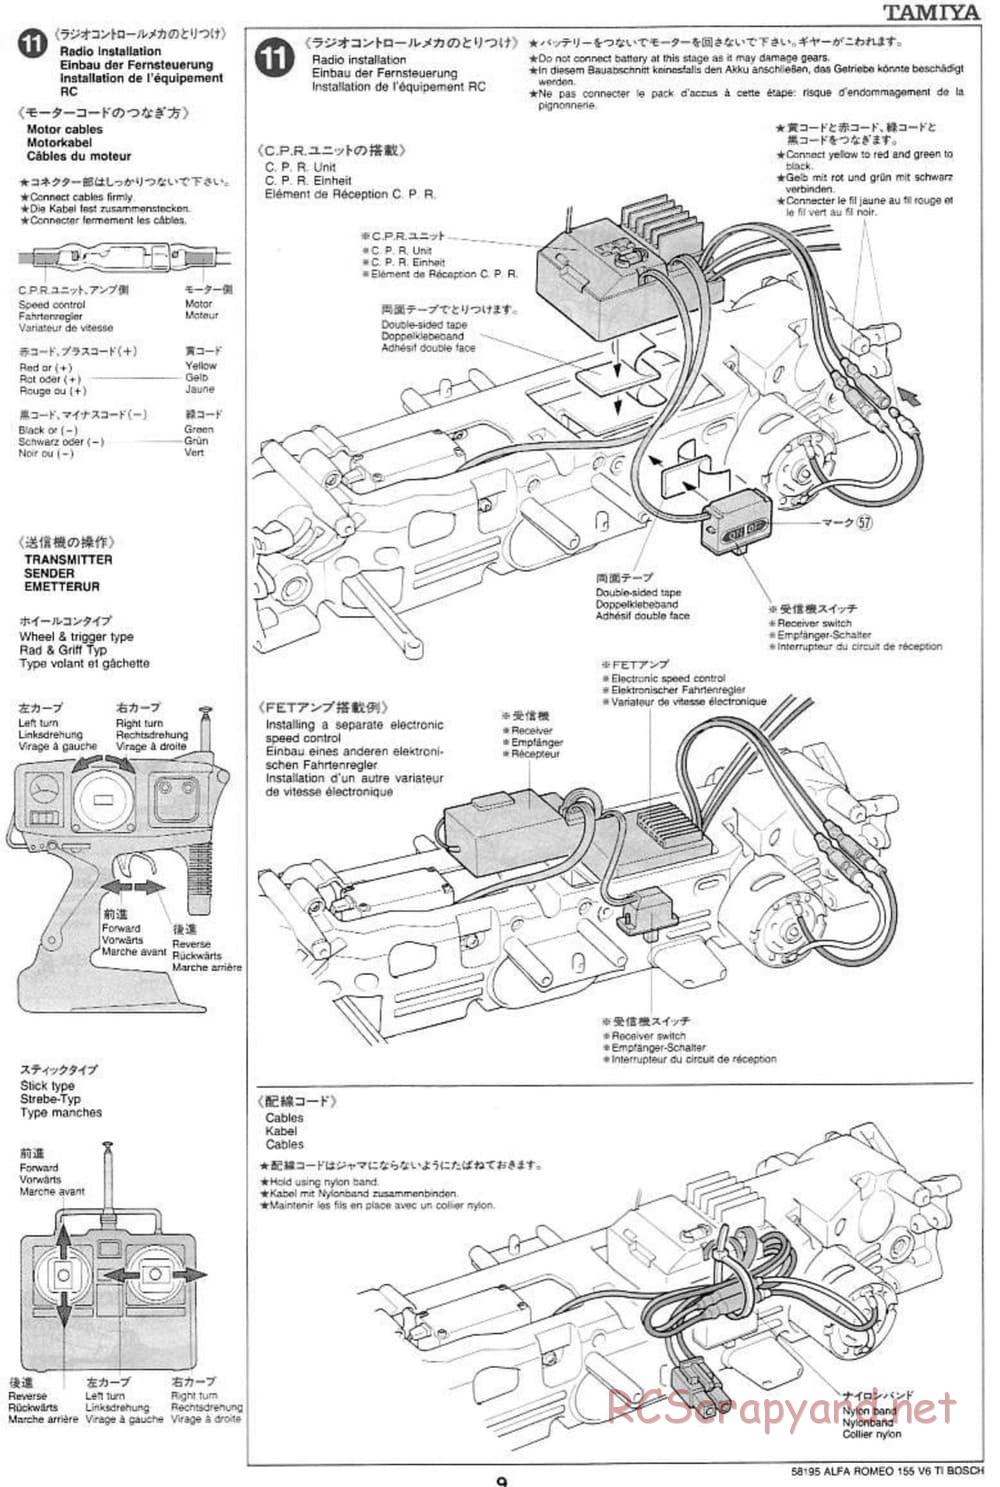 Tamiya - Alfa Romeo 155 V6 TI BOSCH - TL-01 Chassis - Manual - Page 9